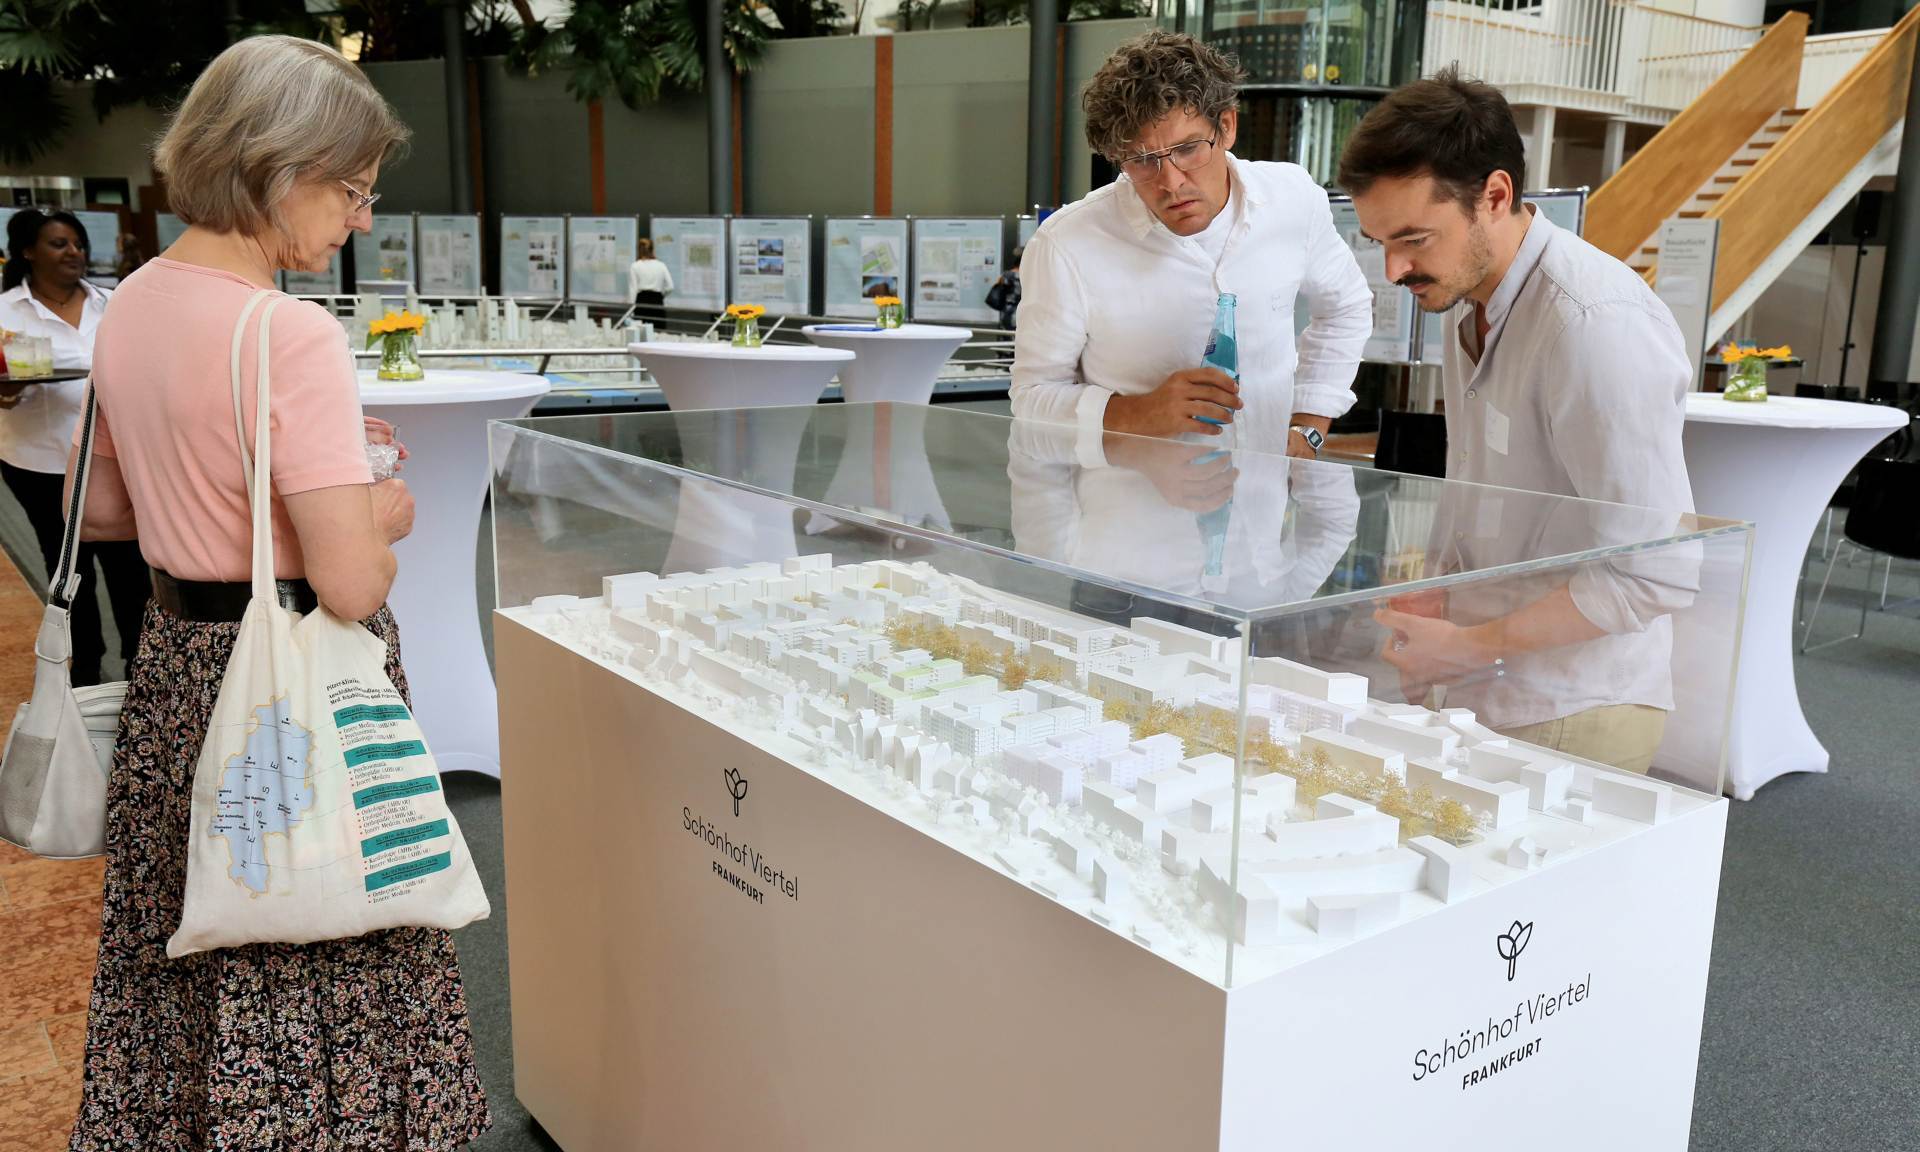 Besucher der Ausstellung betrachten das Modell des Schönhof-Viertels.